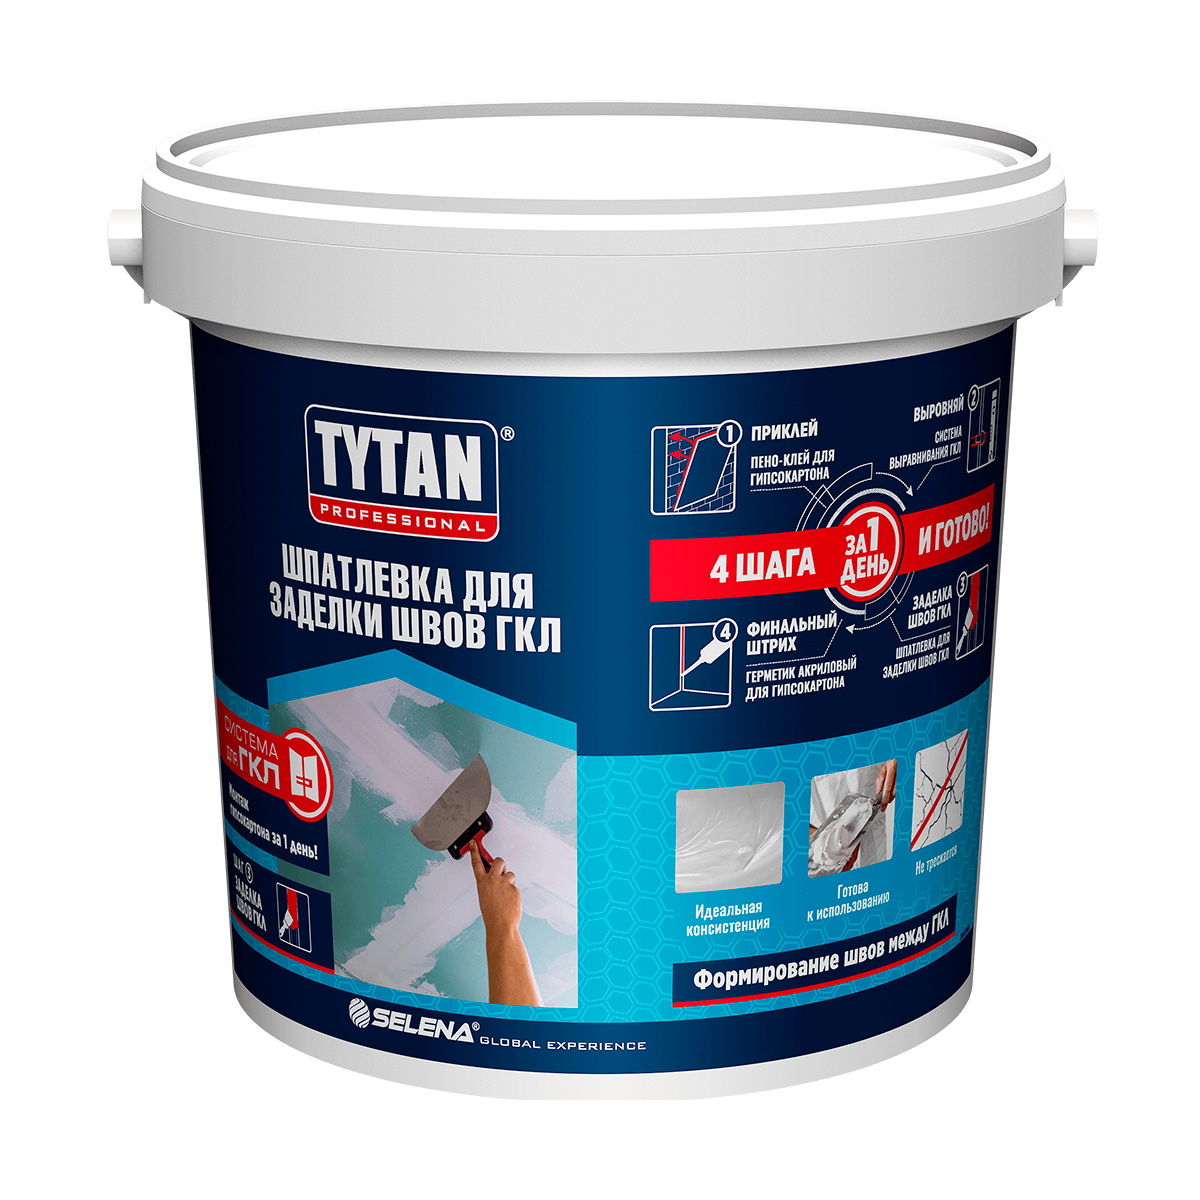 Шпатлевка для гкл полимерная готовая 5 кг (1) "tytan professional"